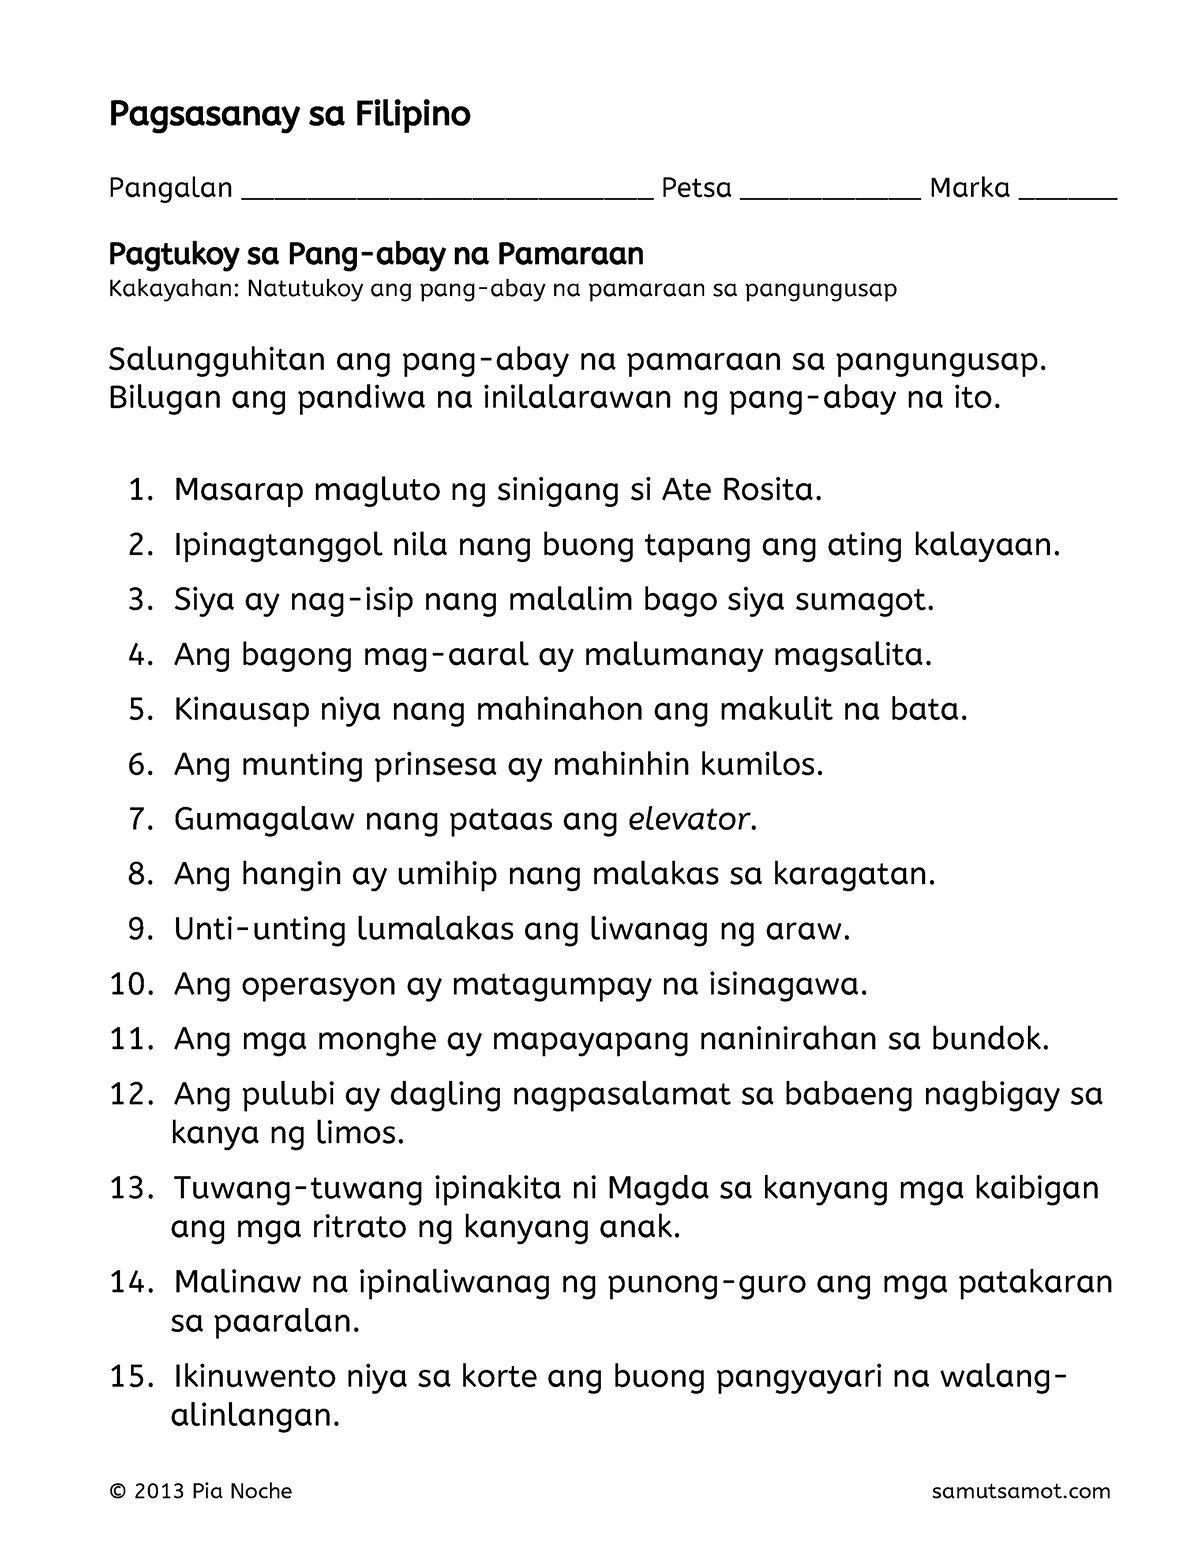 Pagtukoy-sa-pang-abay-na-pamaraan 3-1 - Pagsasanay sa Filipino Pangalan